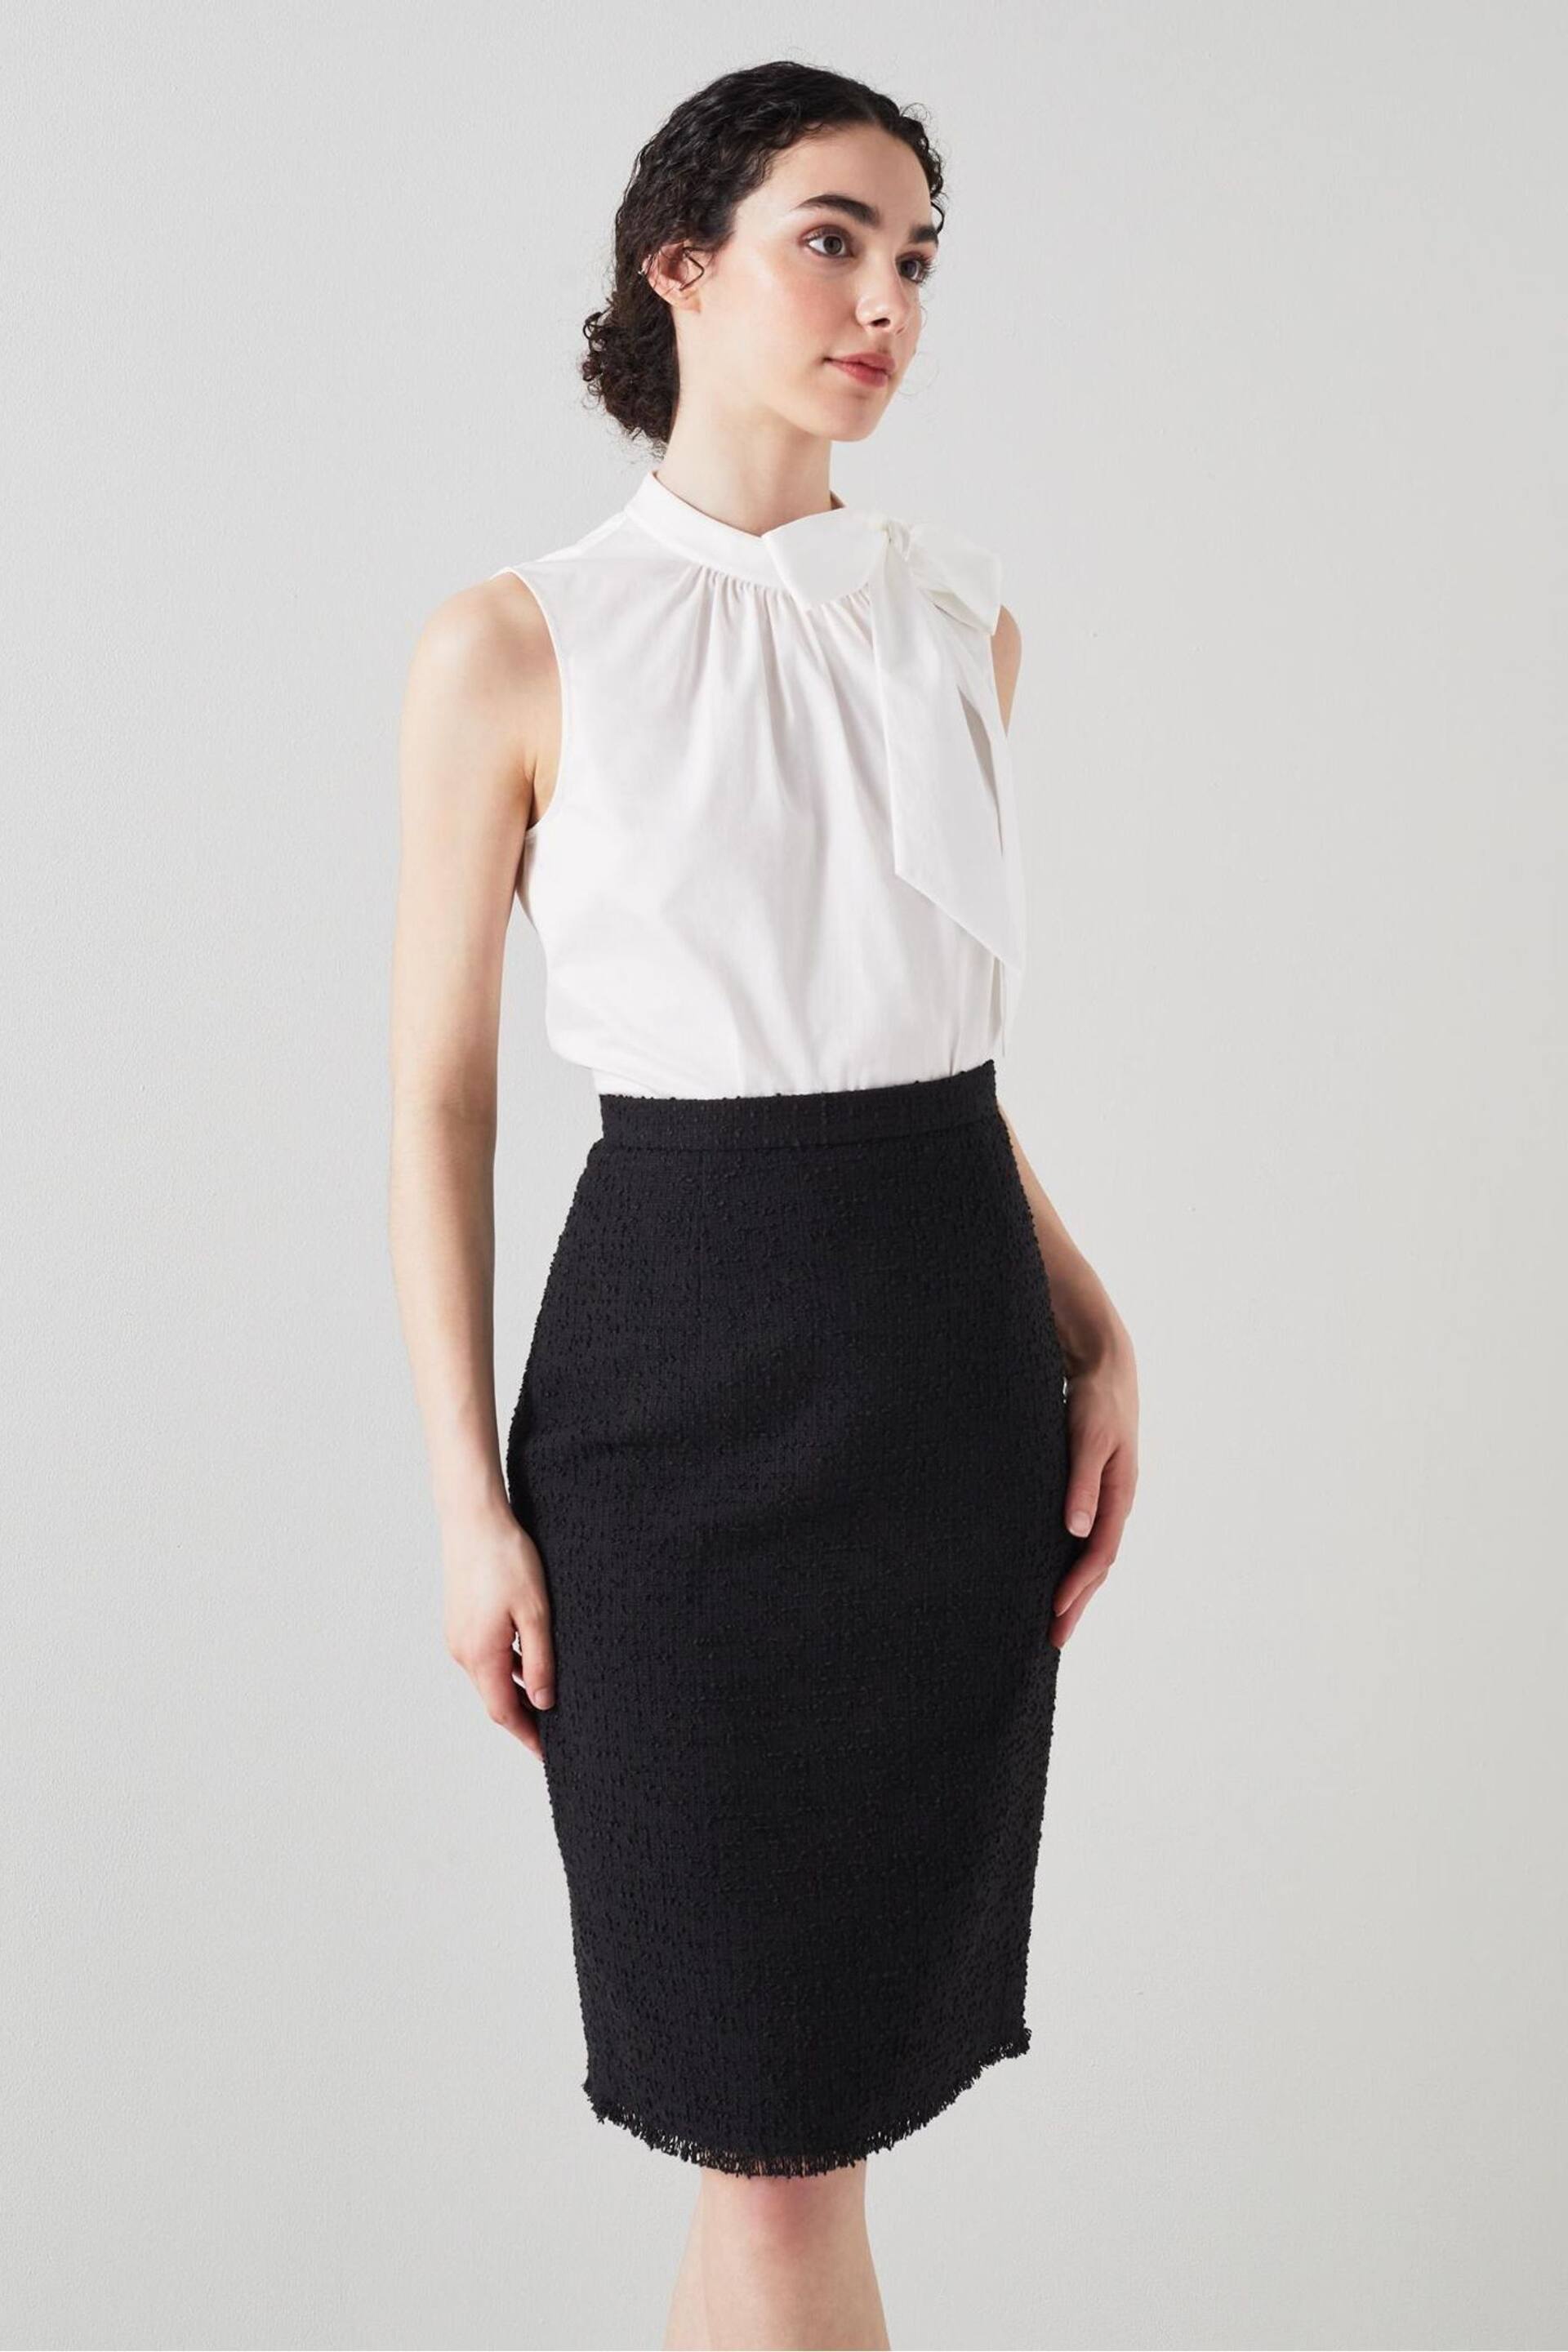 LK Bennett Lara Cotton Italian Tweed Skirt - Image 1 of 6